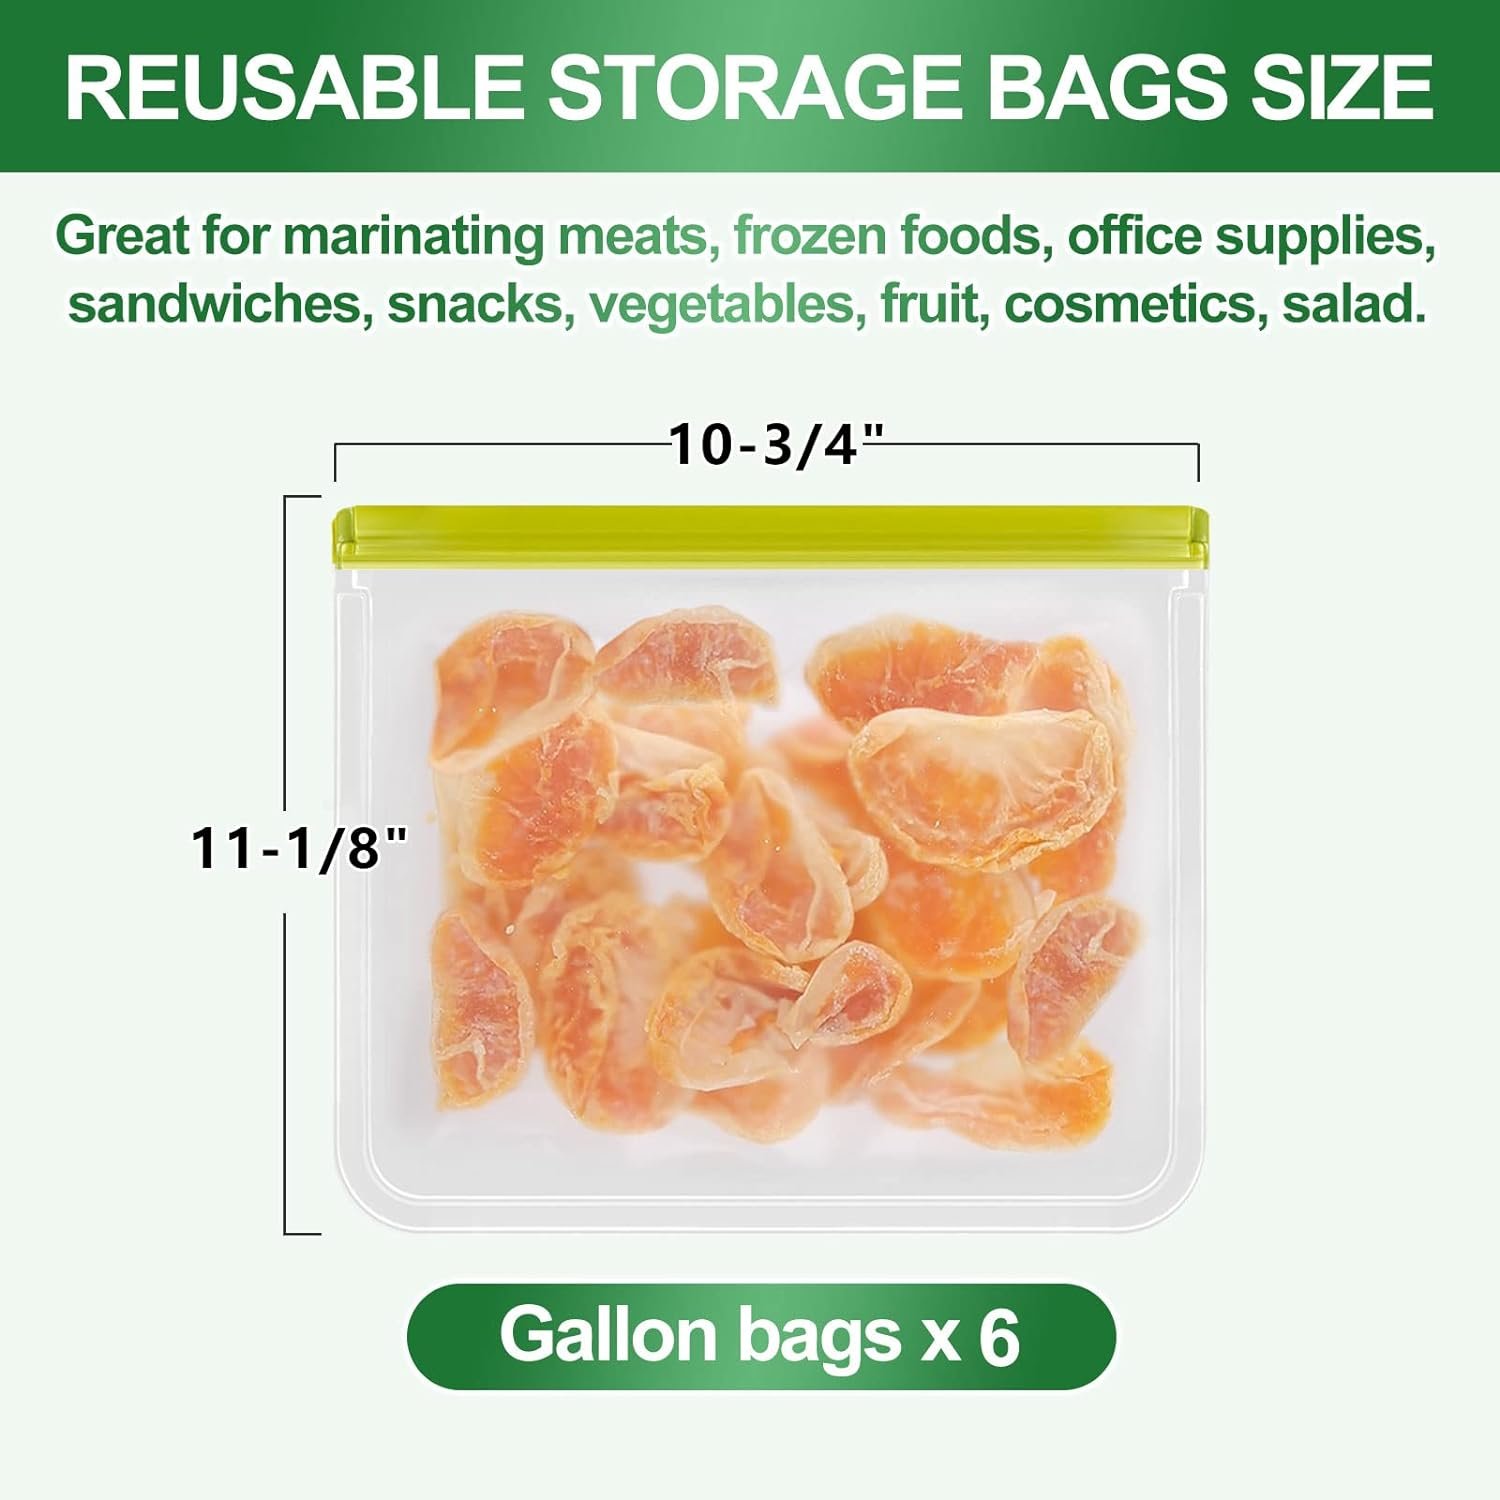 Reusable Freezer Bags Review